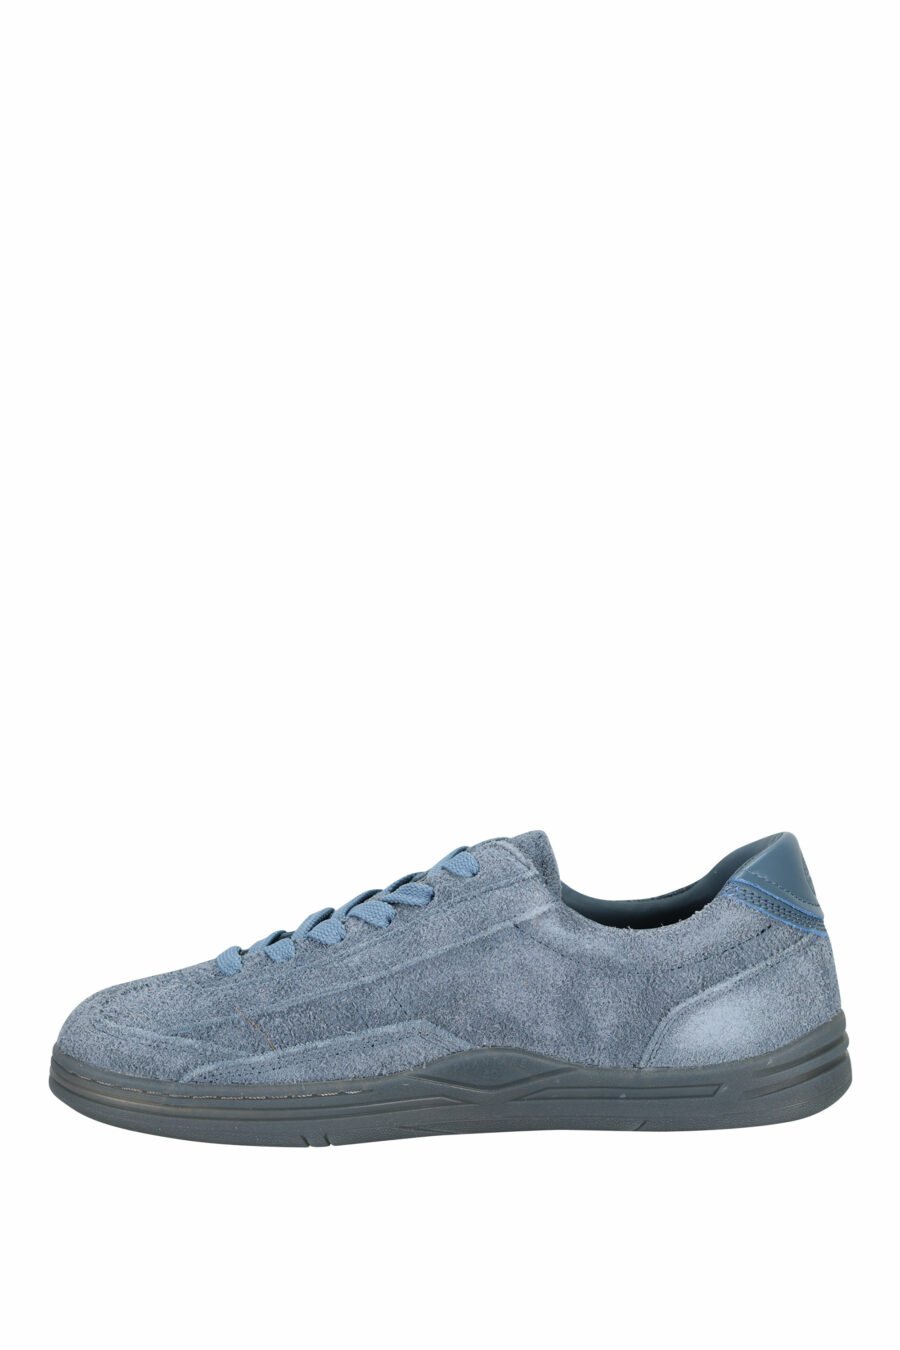 Zapatillas azul oscuro con minilogo y suela gris - 8052572937866 2